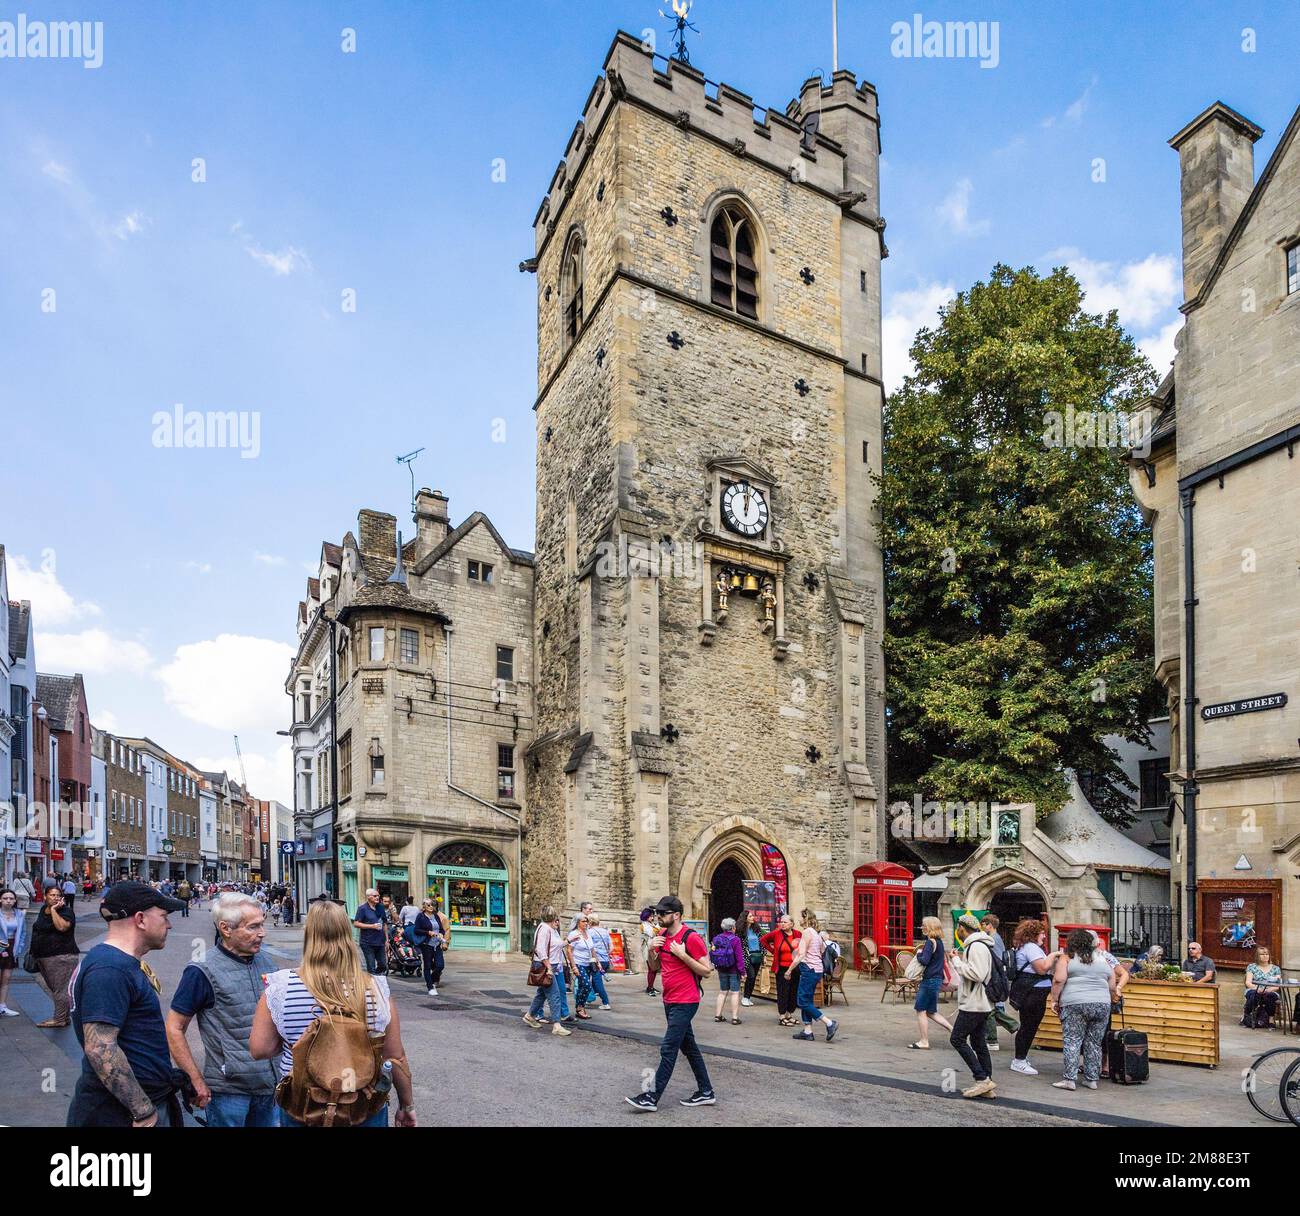 L'incrocio di Carfax nel centro di Oxford con la Torre di Carfax (conosciuta anche come St. Martin's Tower), Oxfordshire, Inghilterra sudorientale Foto Stock